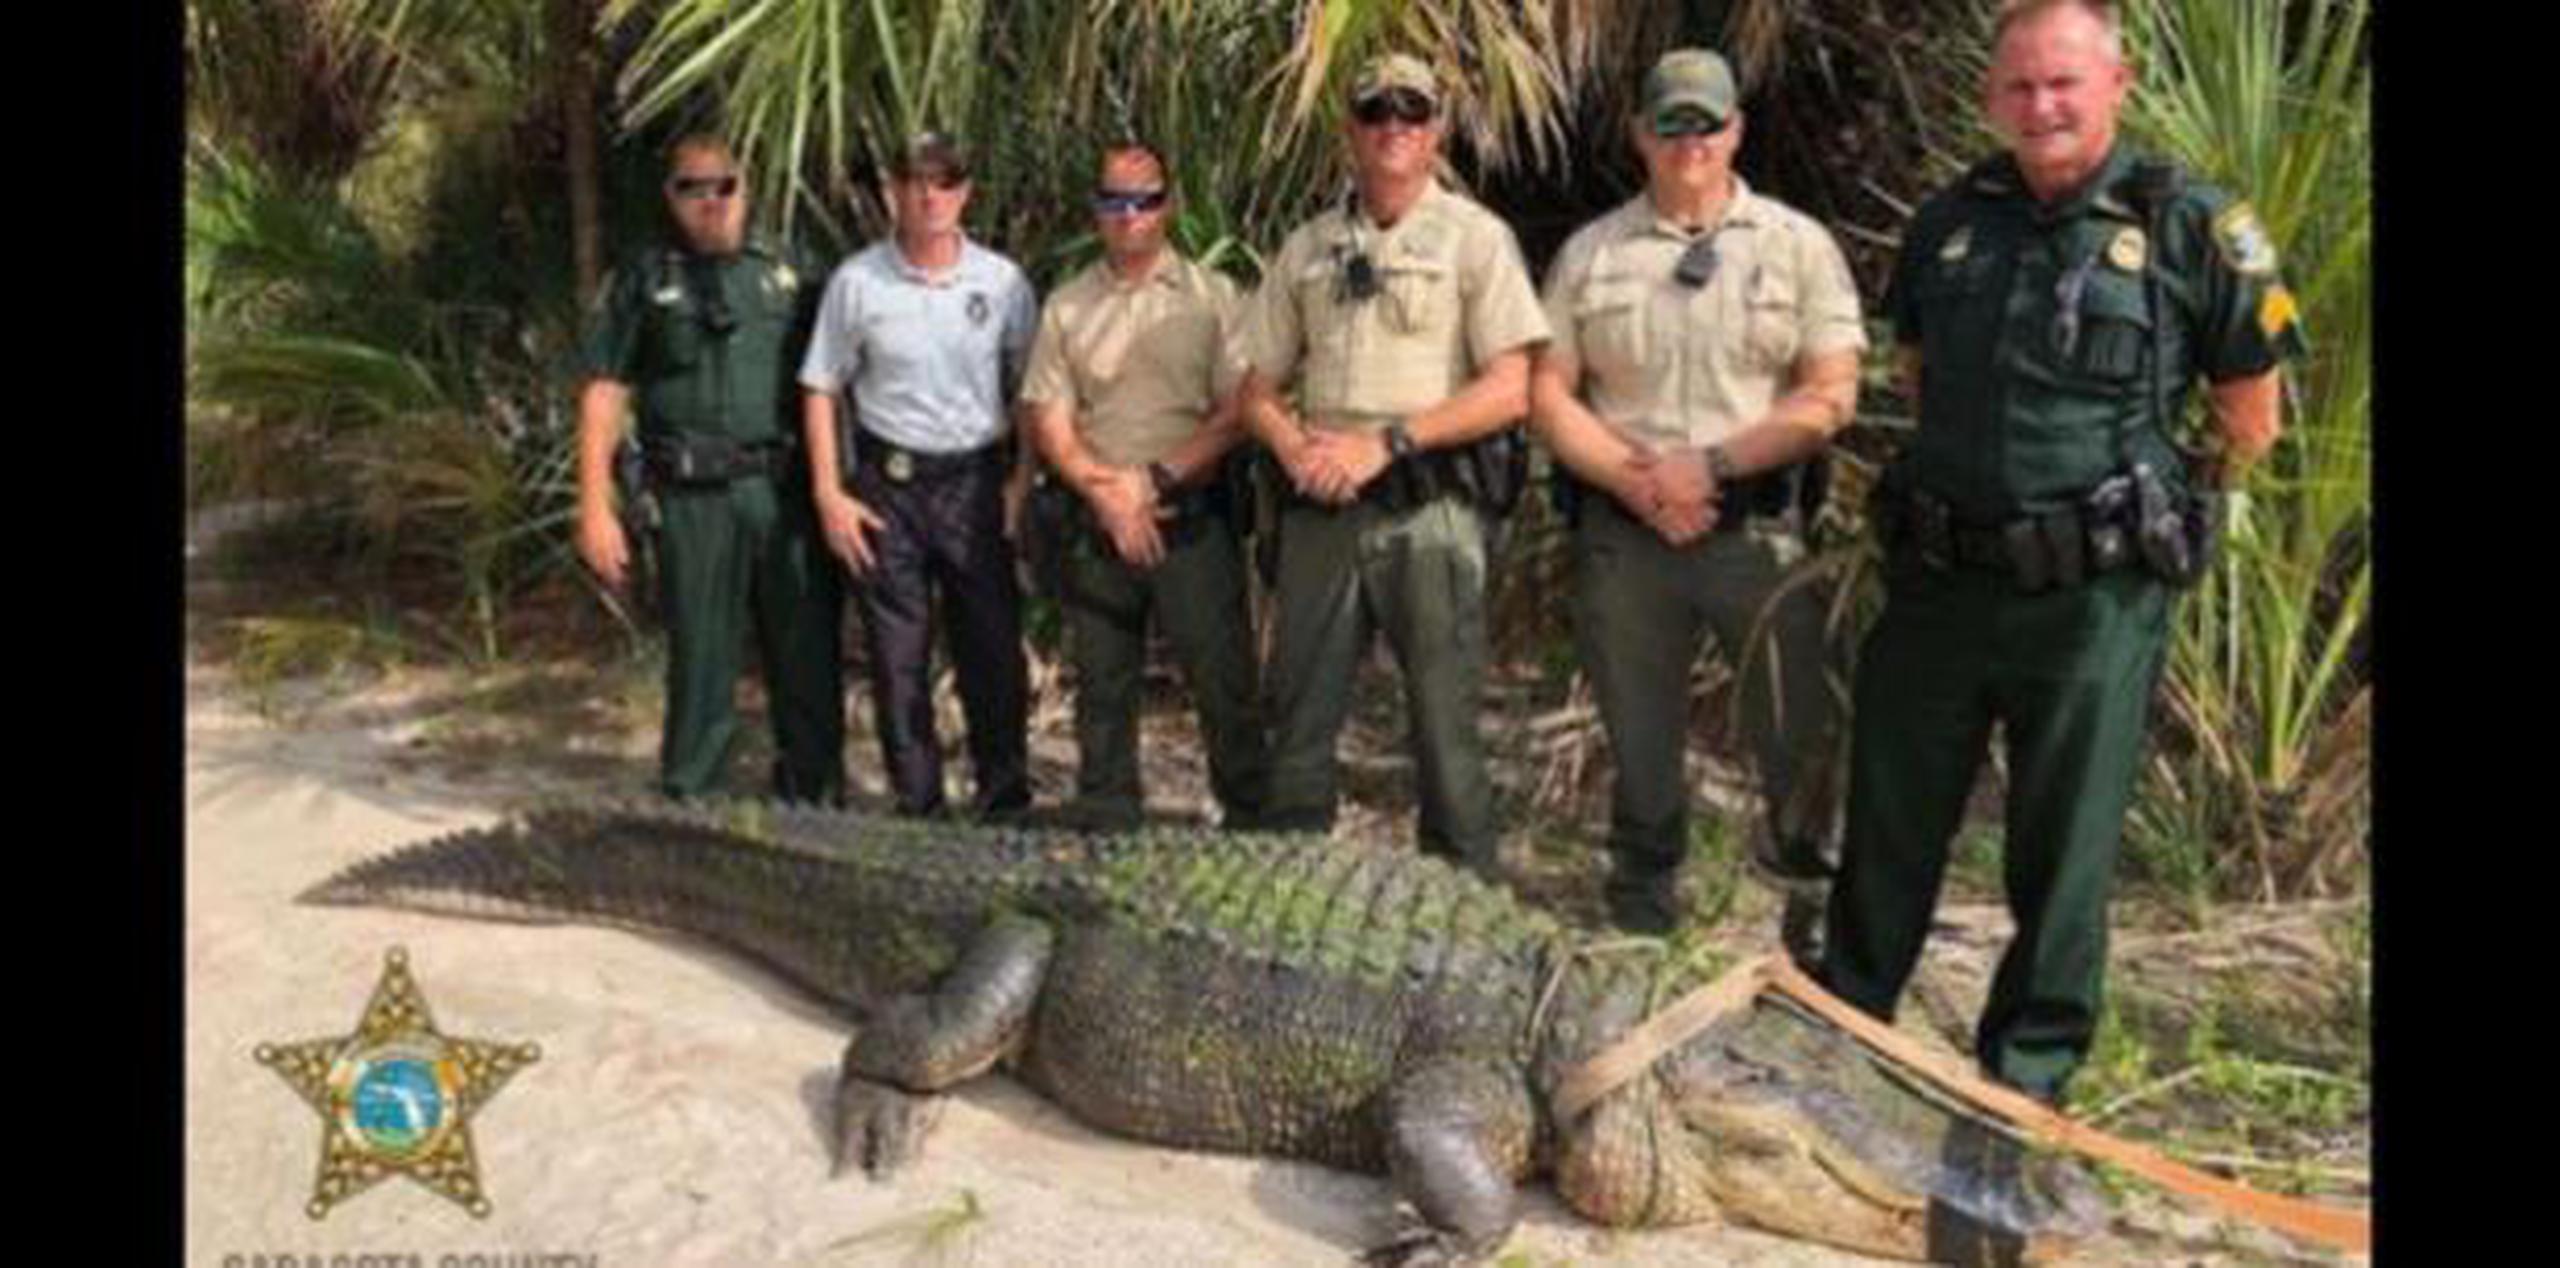 Los seis agentes que lo capturaron se fotografiaron junto al reptil inmovilizado. (Facebook/Oficina del Sheriff del Condado de Sarasota)